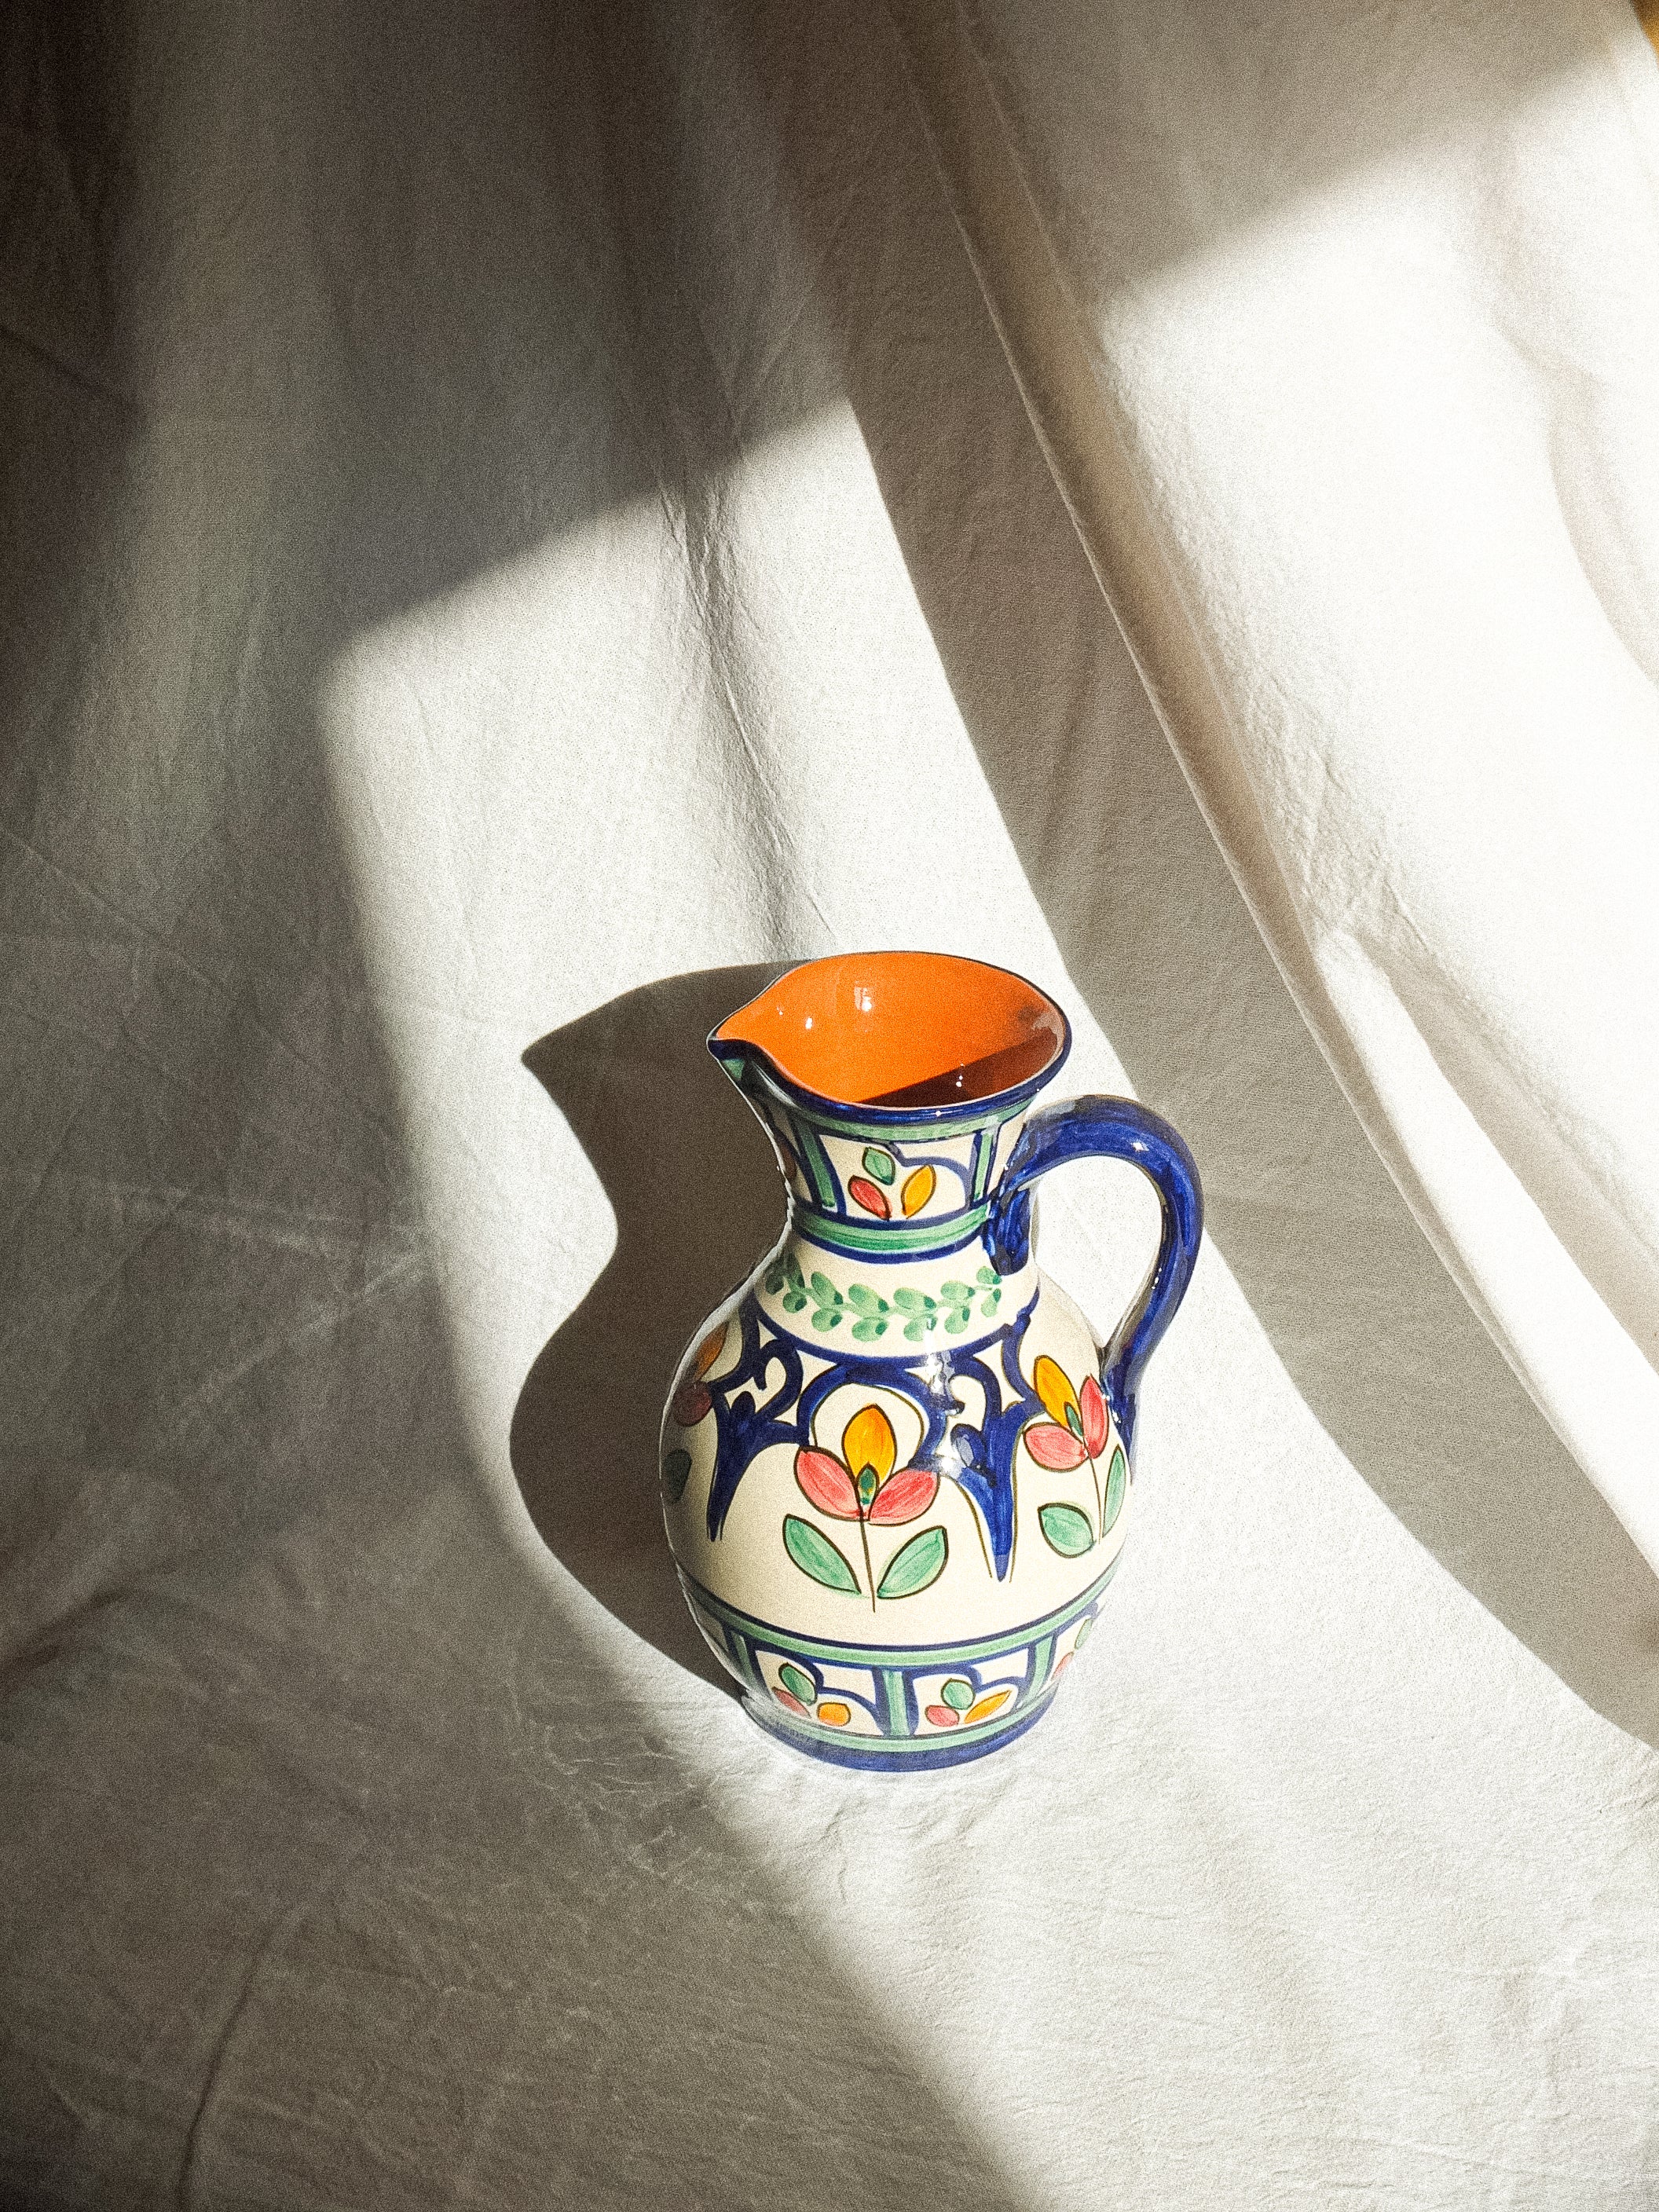 Carafe en terre cuite fabriquée et peinte à la main au Portugal. Contenance de 1 litre. Motifs floraux colorés. 